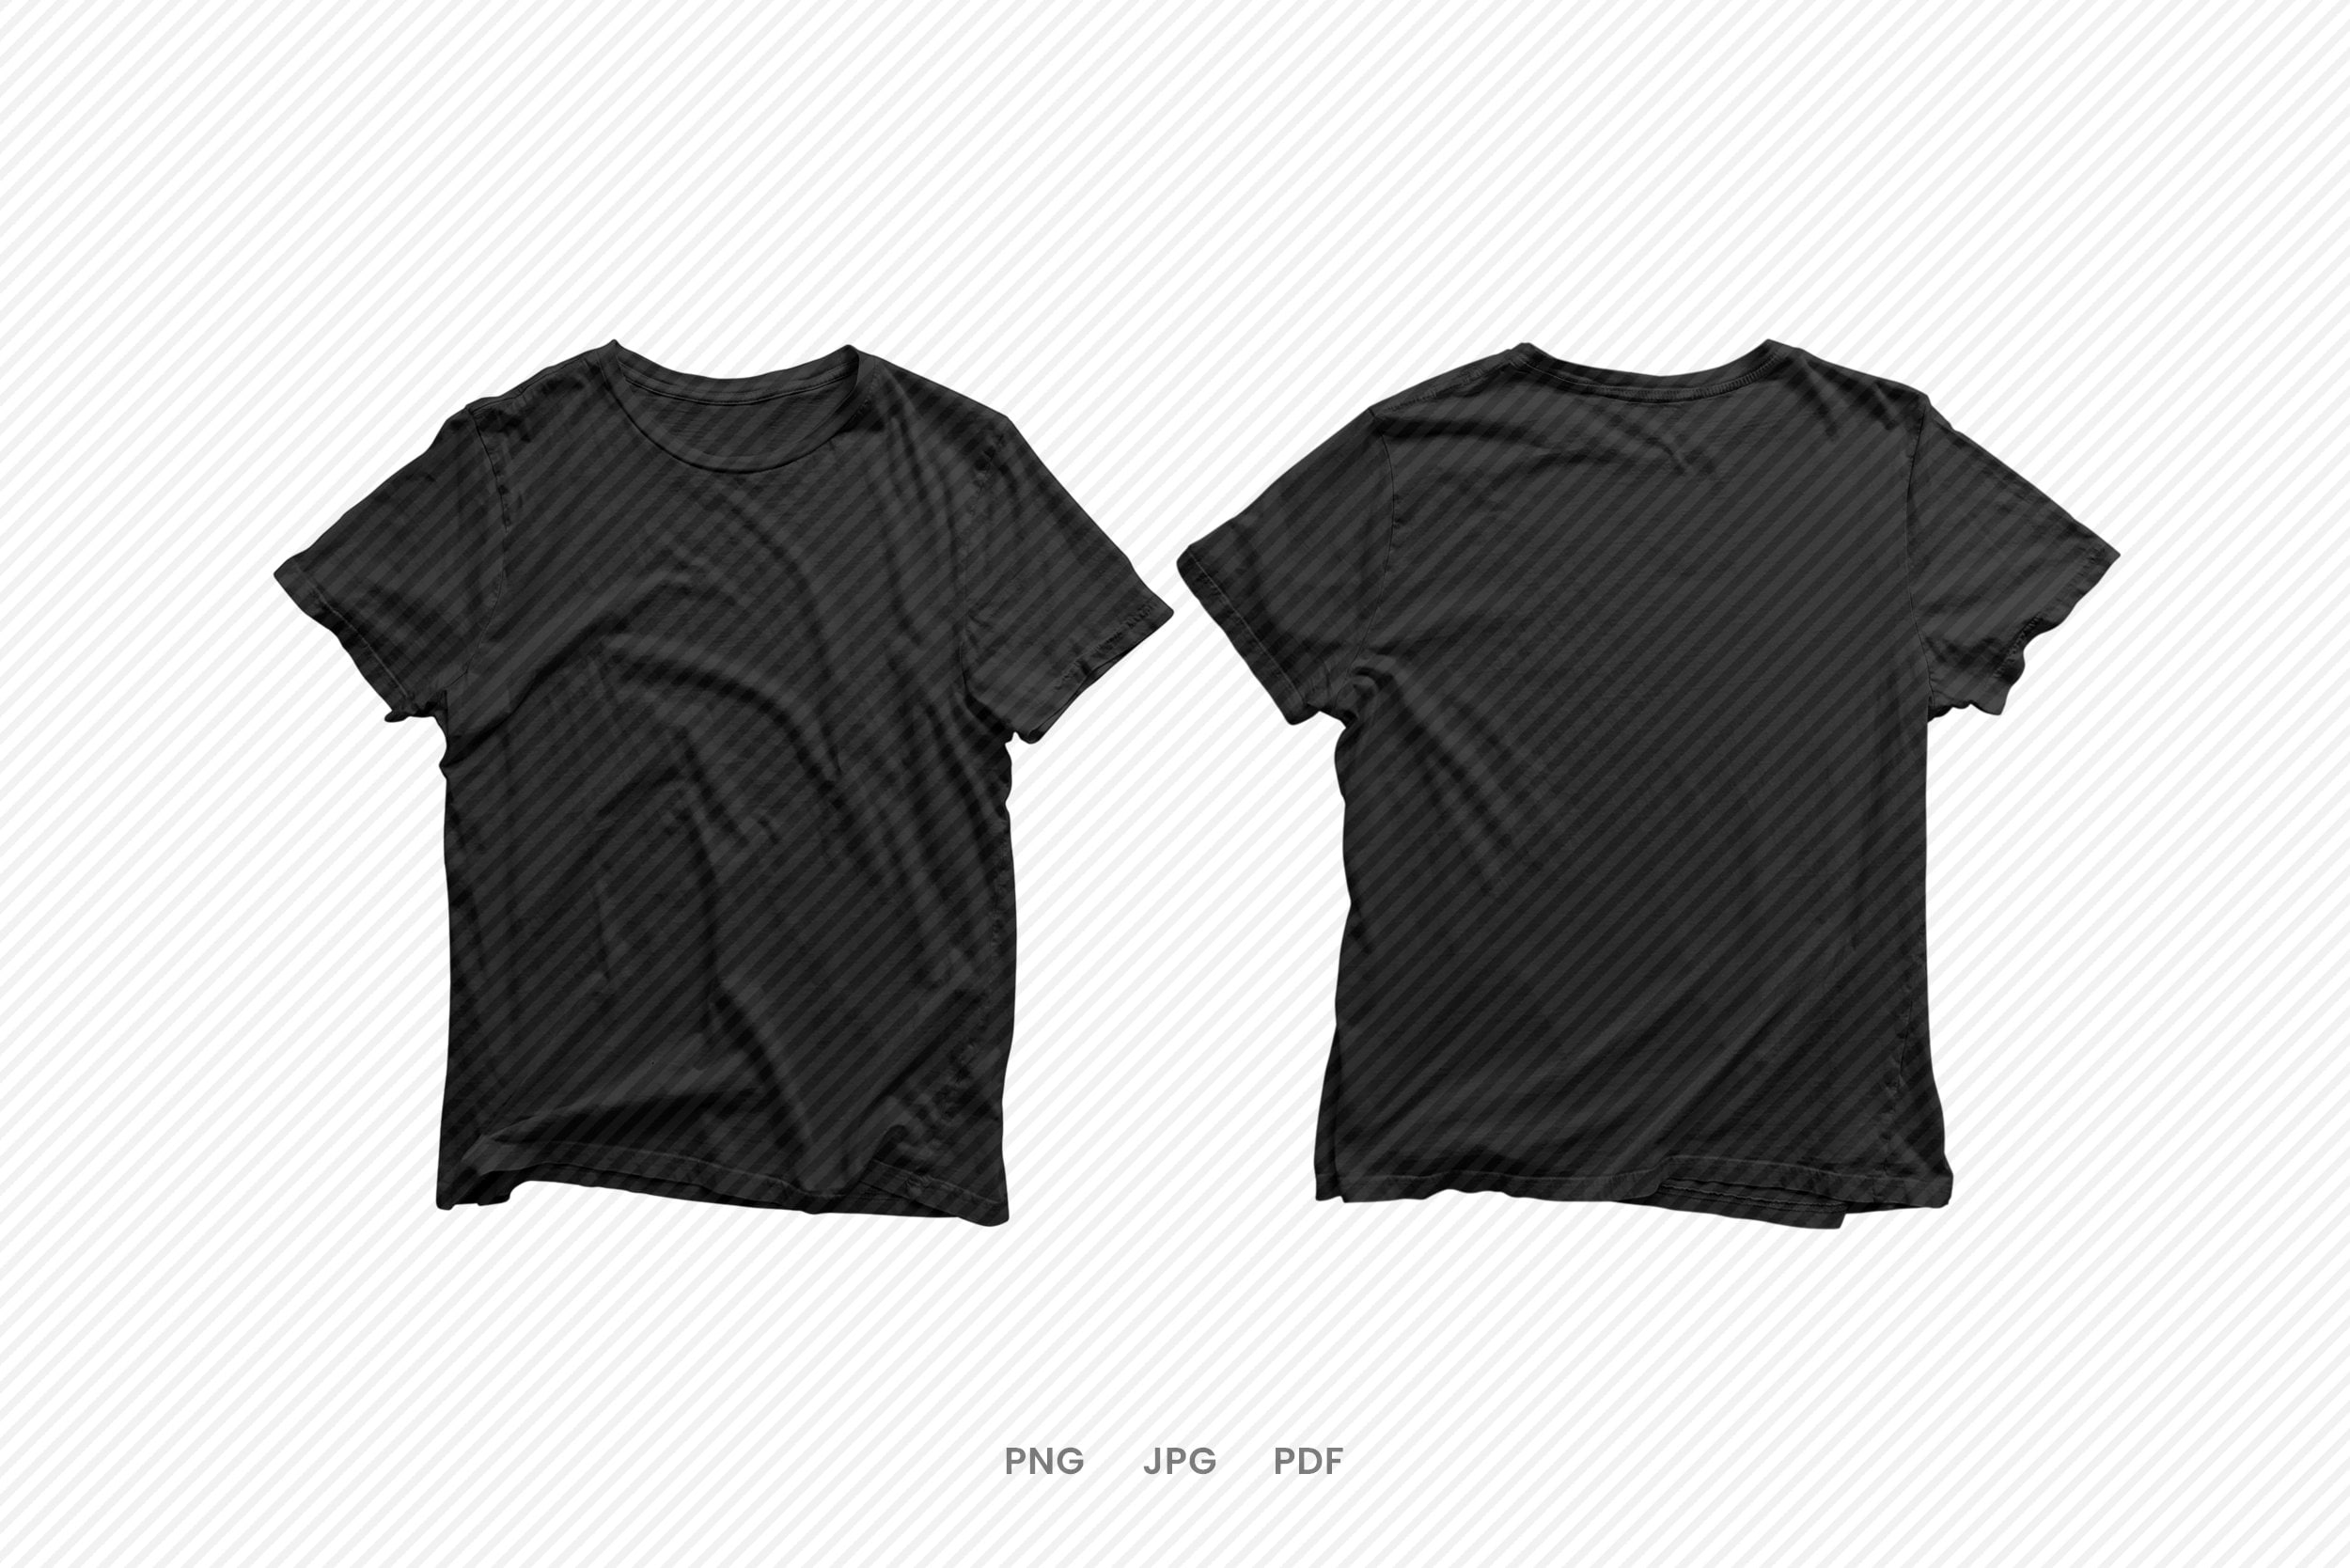 Black T-shirt Mockup Instant Digital Download for Mockups - Etsy